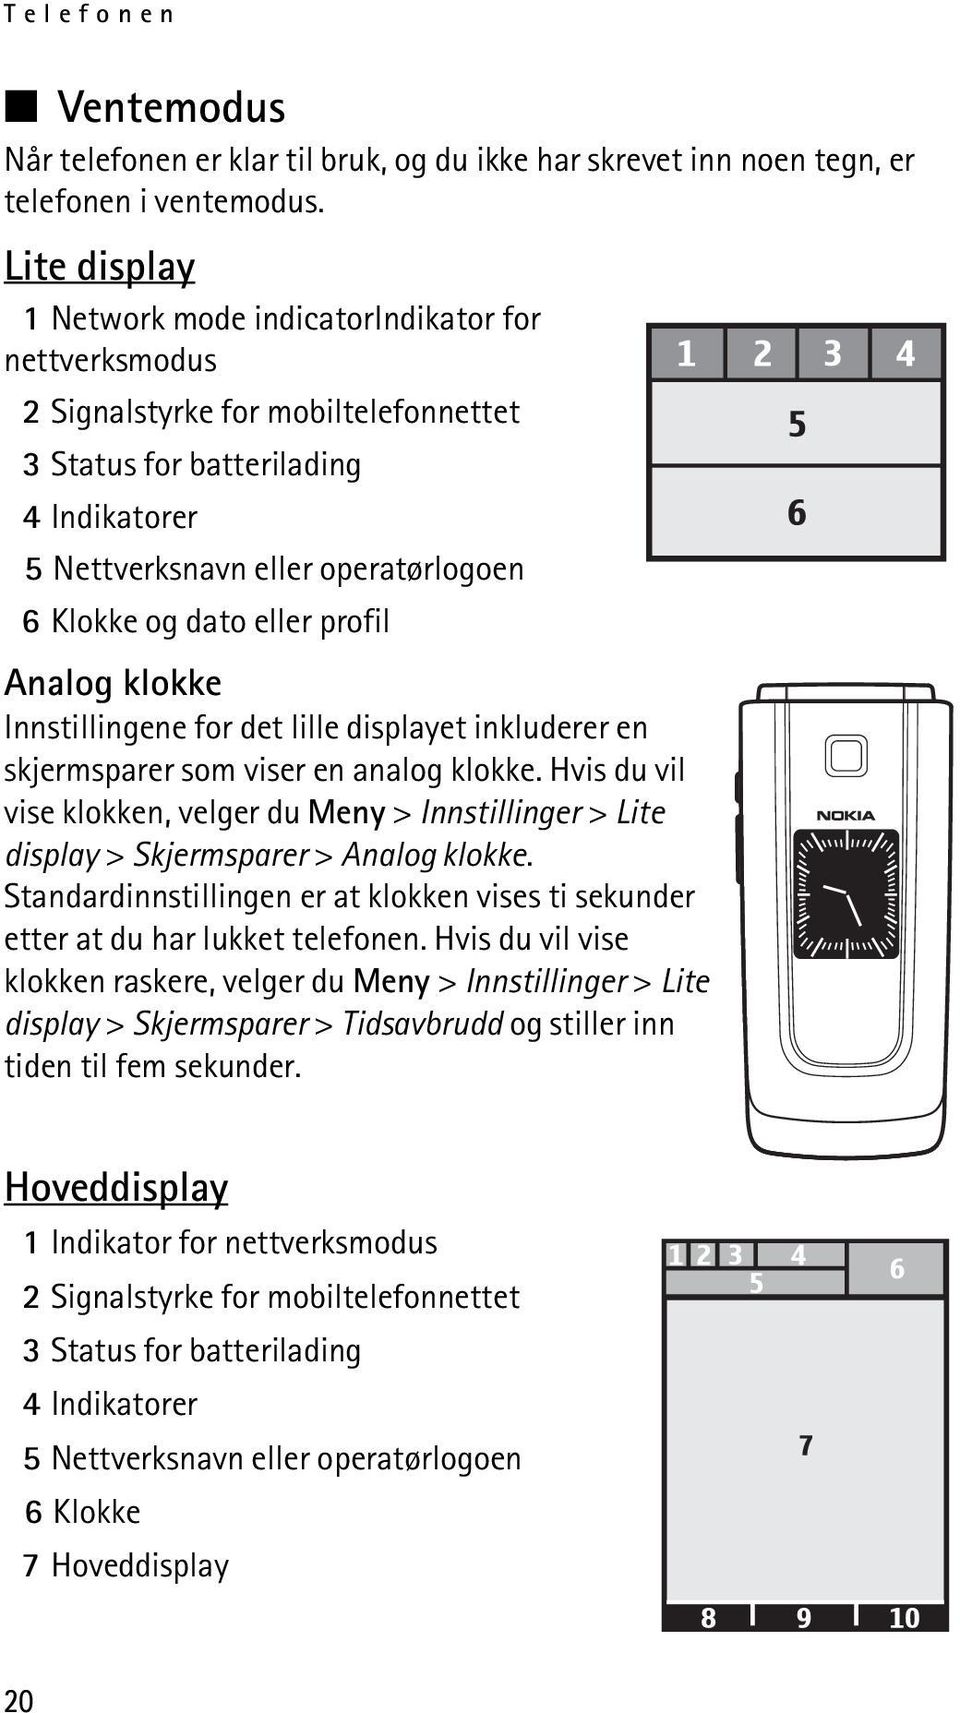 Brukerhåndbok for Nokia PDF Free Download